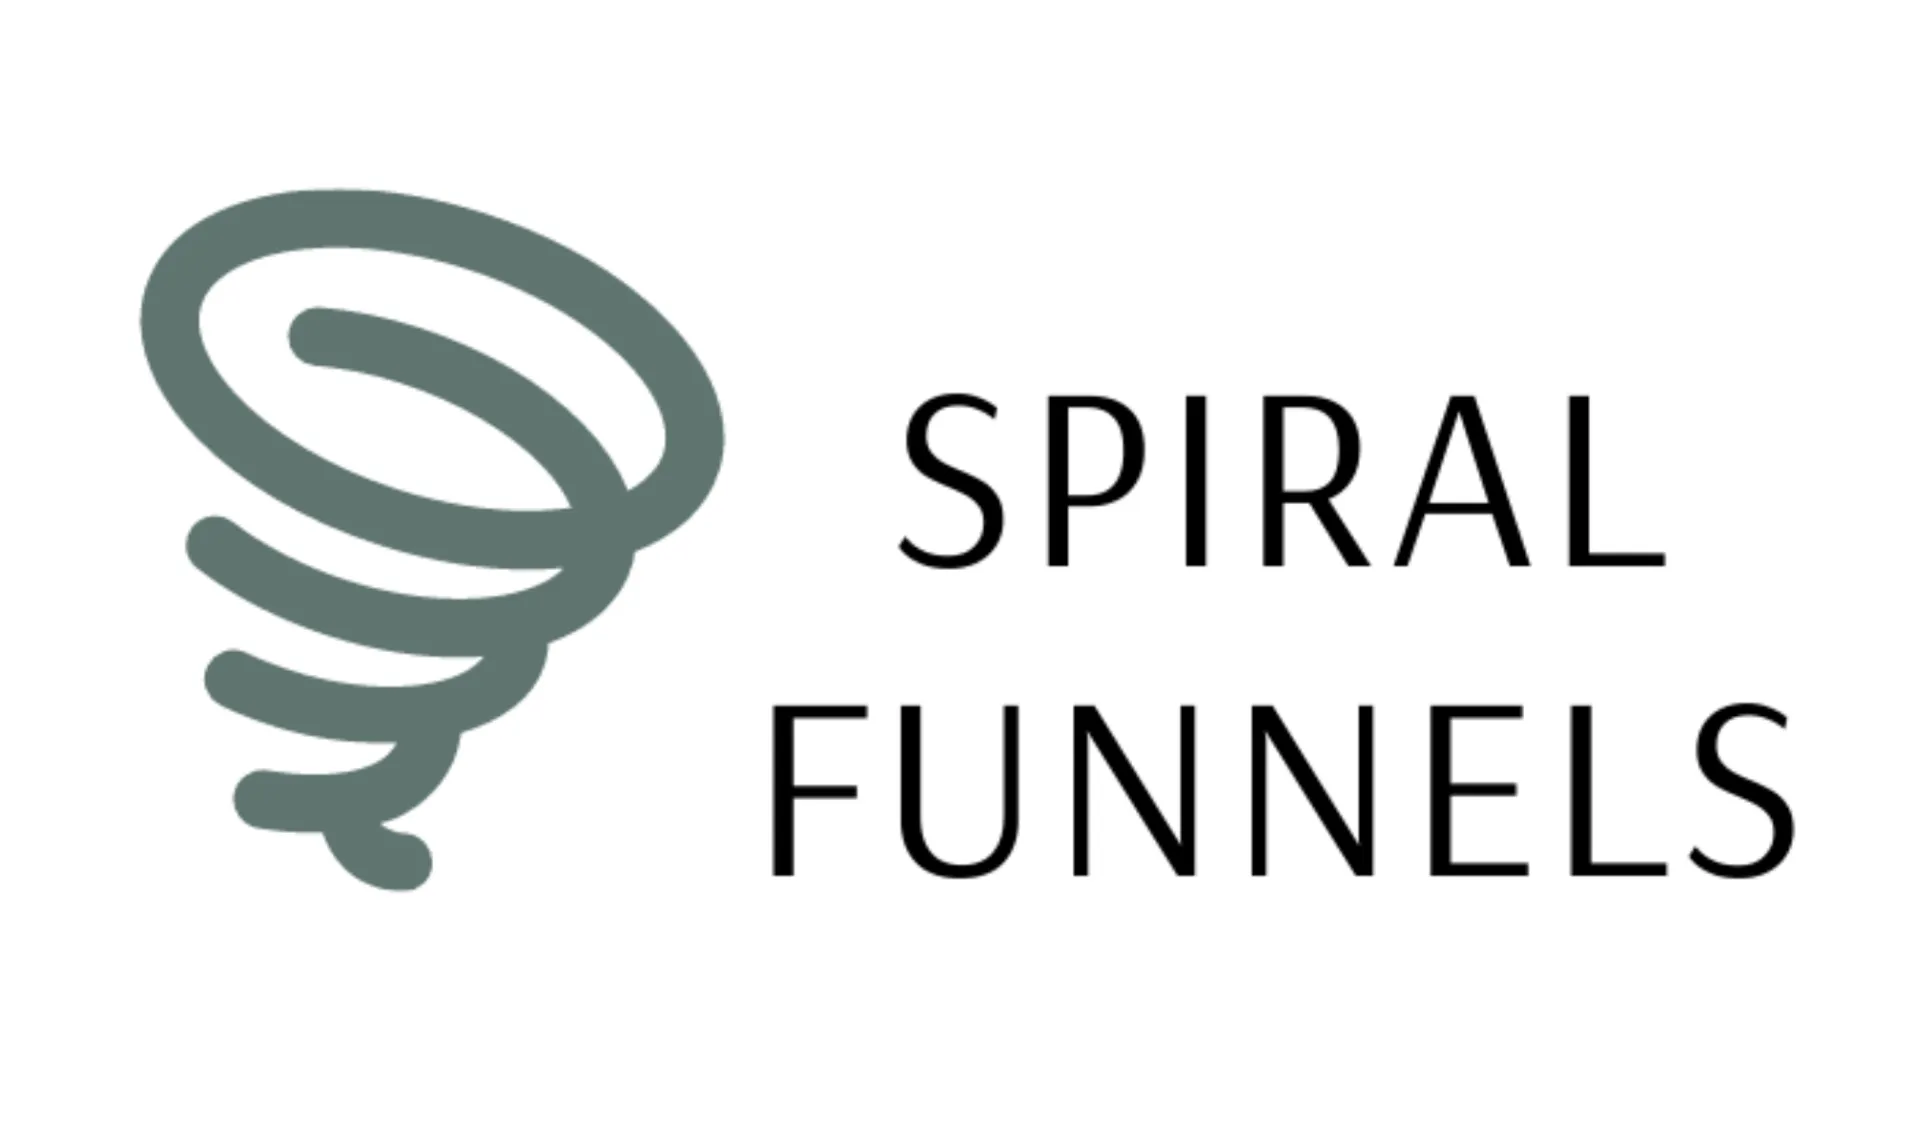 Spiral Funnels